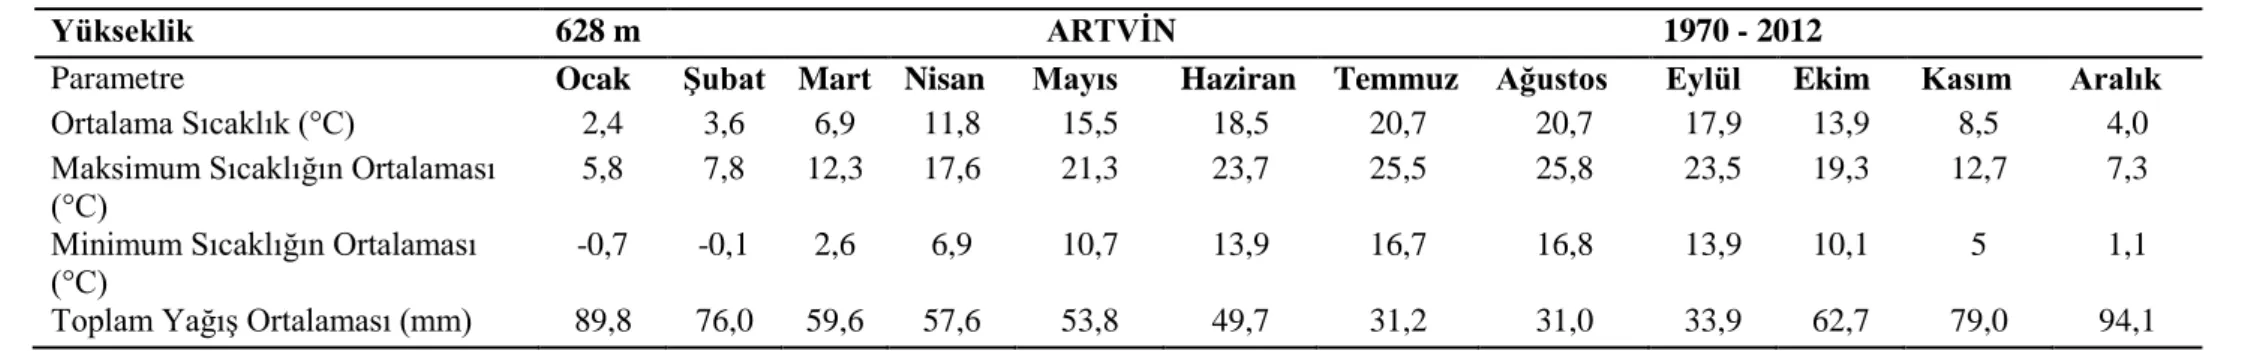 Tablo 3. Artvin Meteoroloji İstasyonunun 1970–2012 Yıllarına Ait Meteorolojik Ölçüm Değerleri 